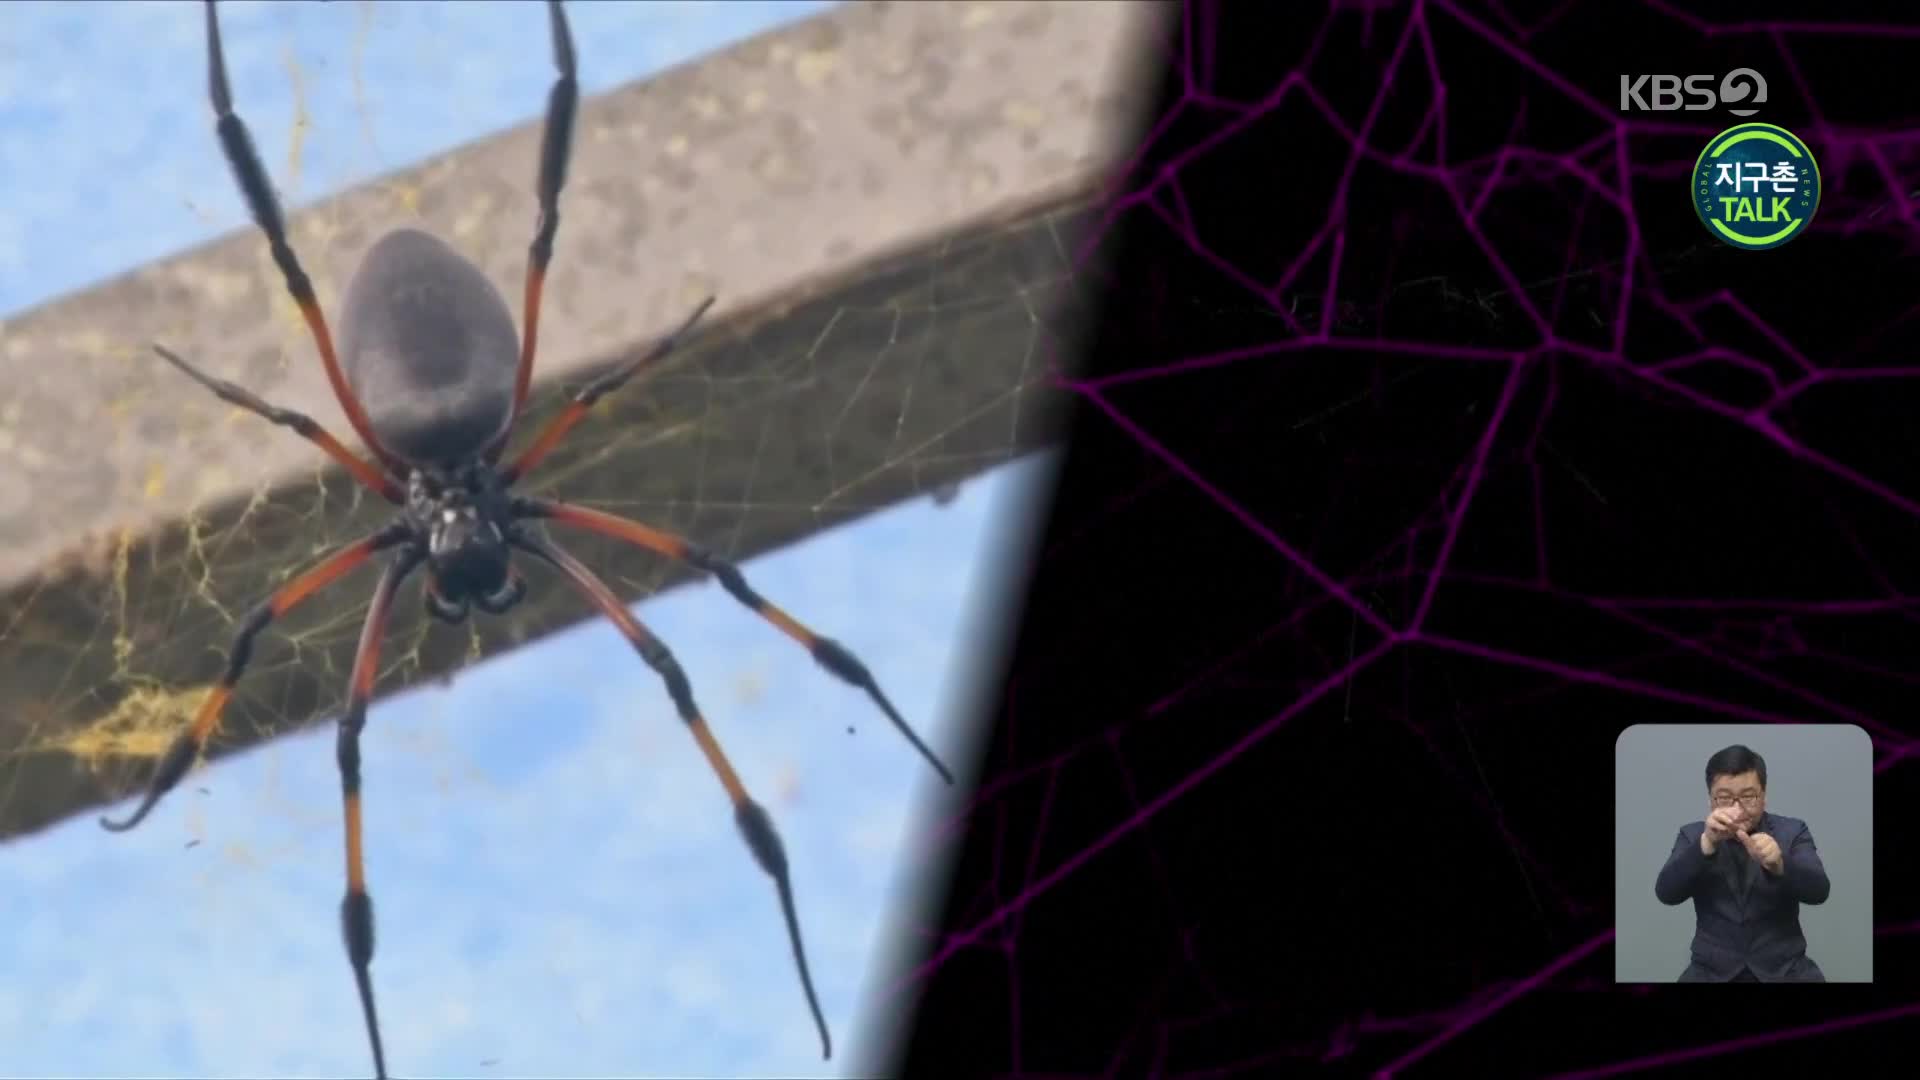 [지구촌 Talk] 거미줄의 진동이 만들어낸 음악 소리는?